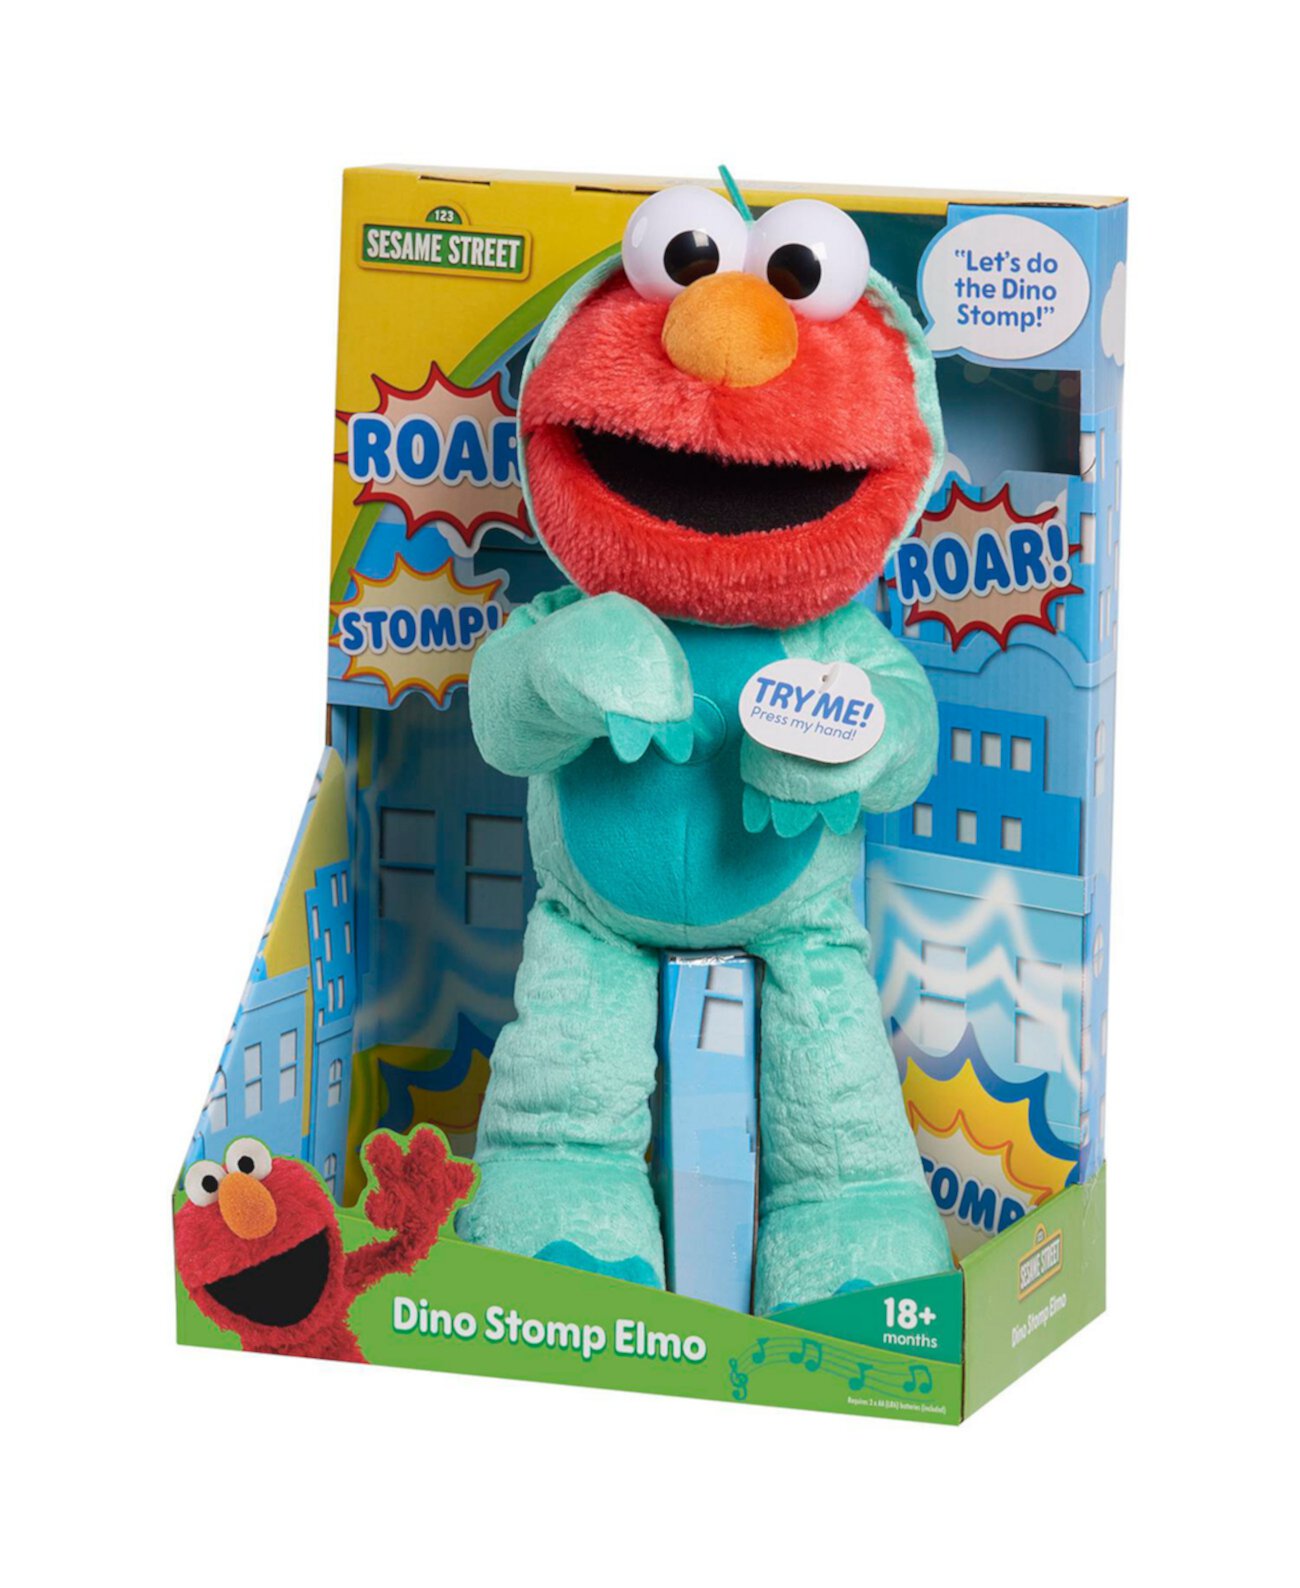 13-дюймовая плюшевая мягкая игрушка Дино Томп Элмо поет и танцует Sesame Street